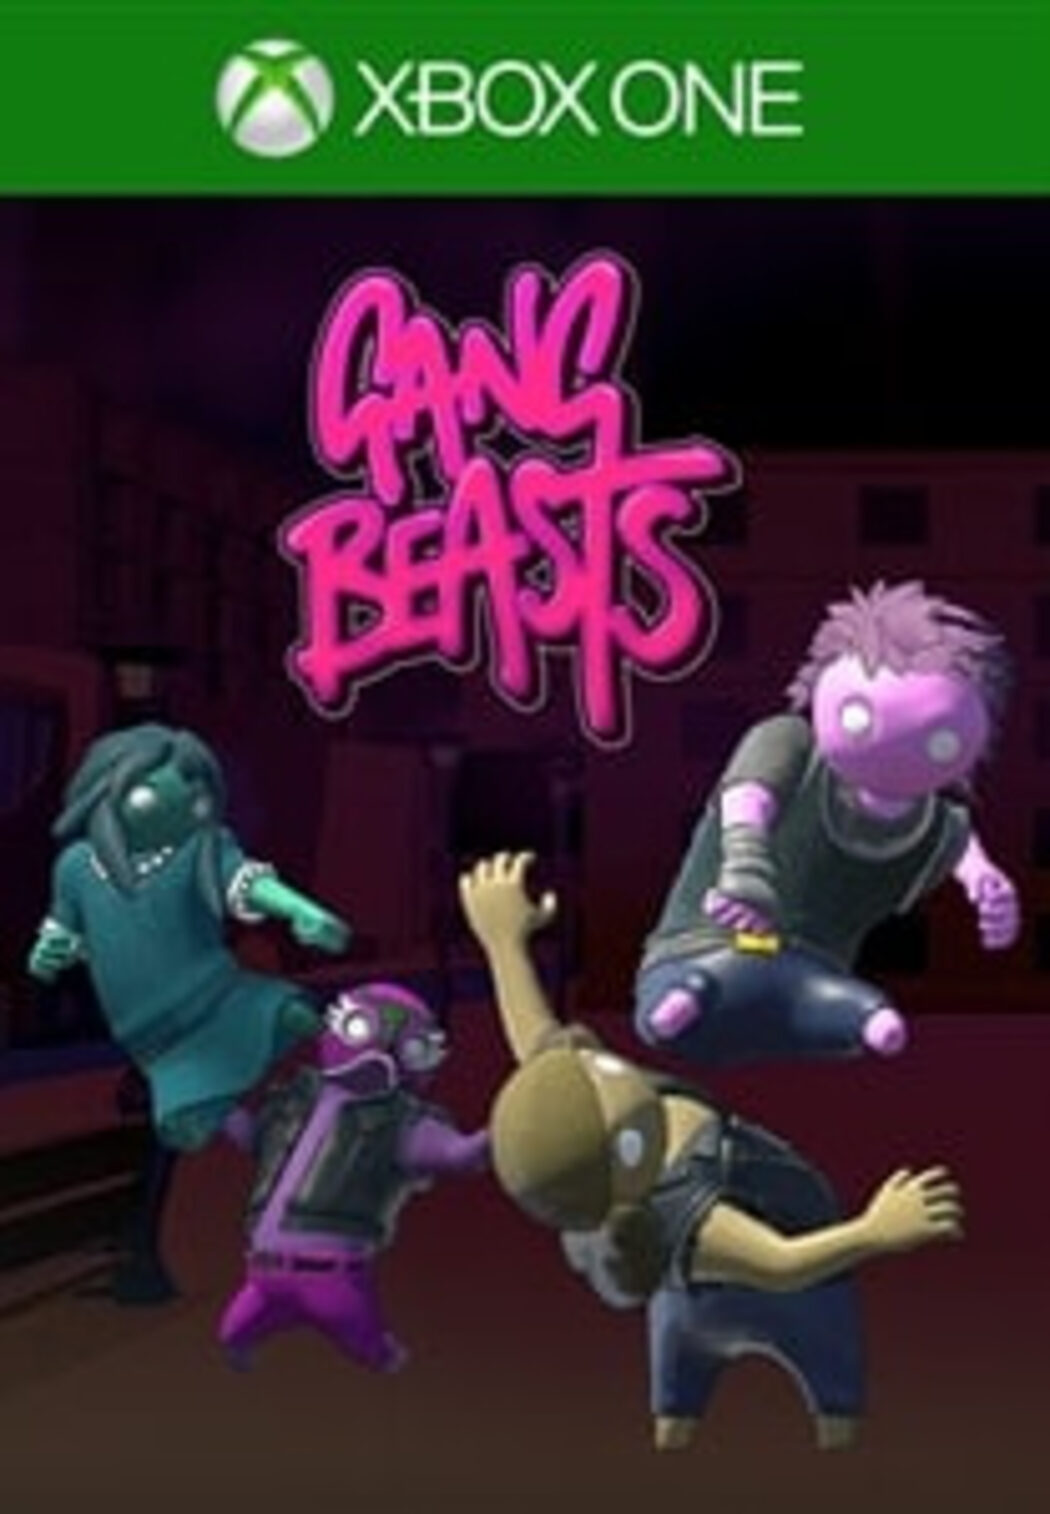 Mannelijkheid Eigenaardig Kreunt Buy Gang Beasts Xbox key! Cheap price | ENEBA